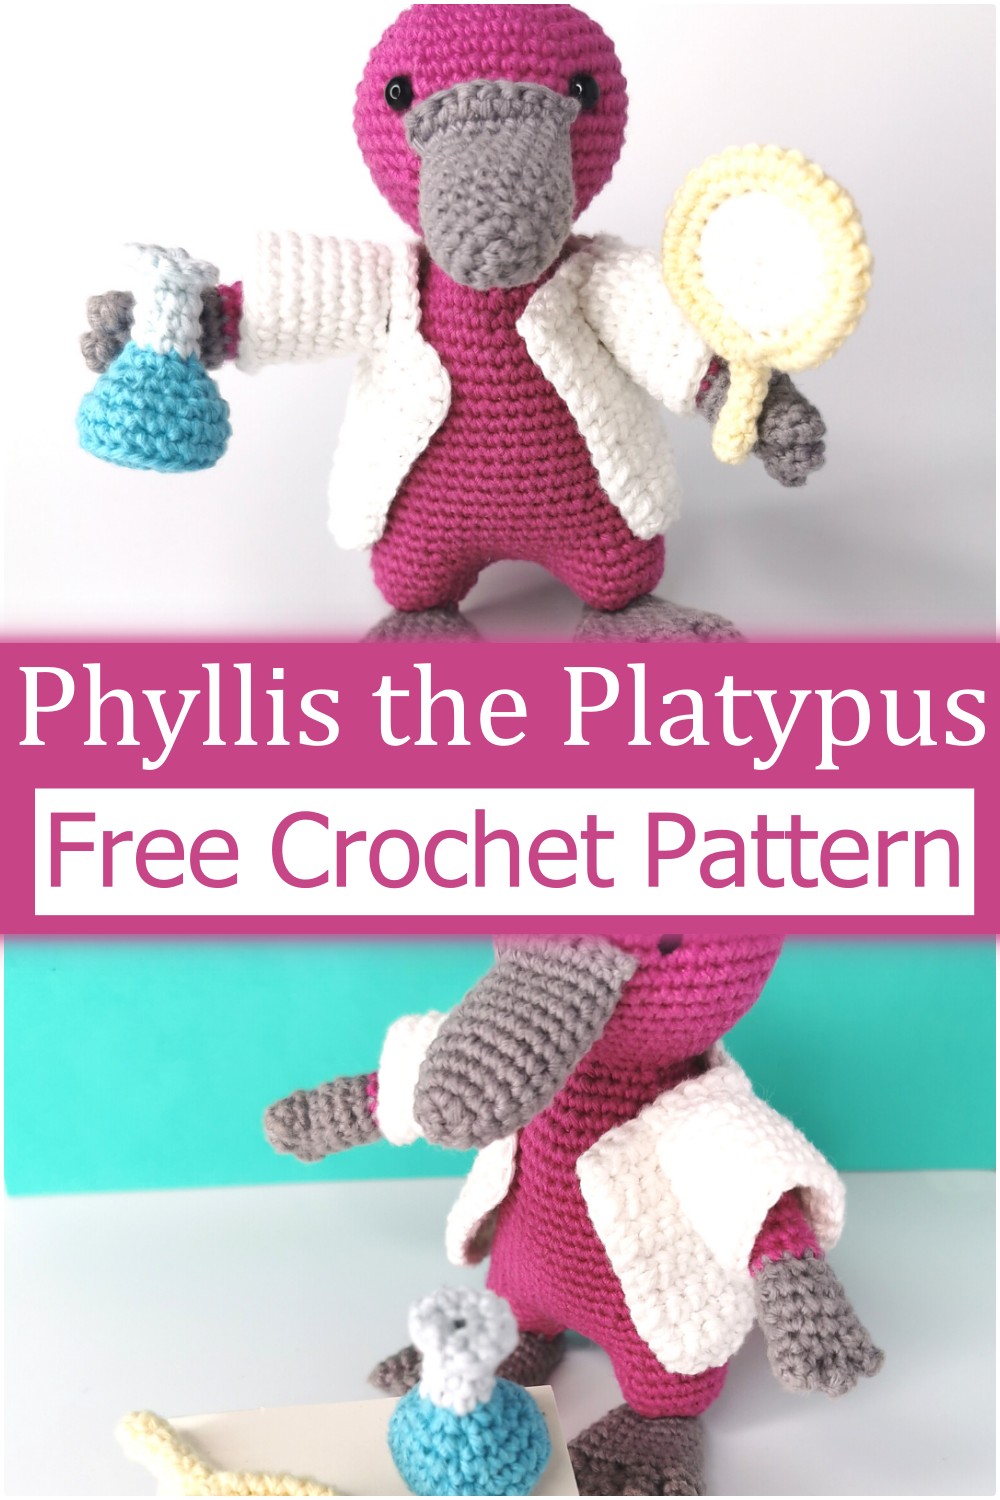 Crochet A Amigurumi In Platypus Design